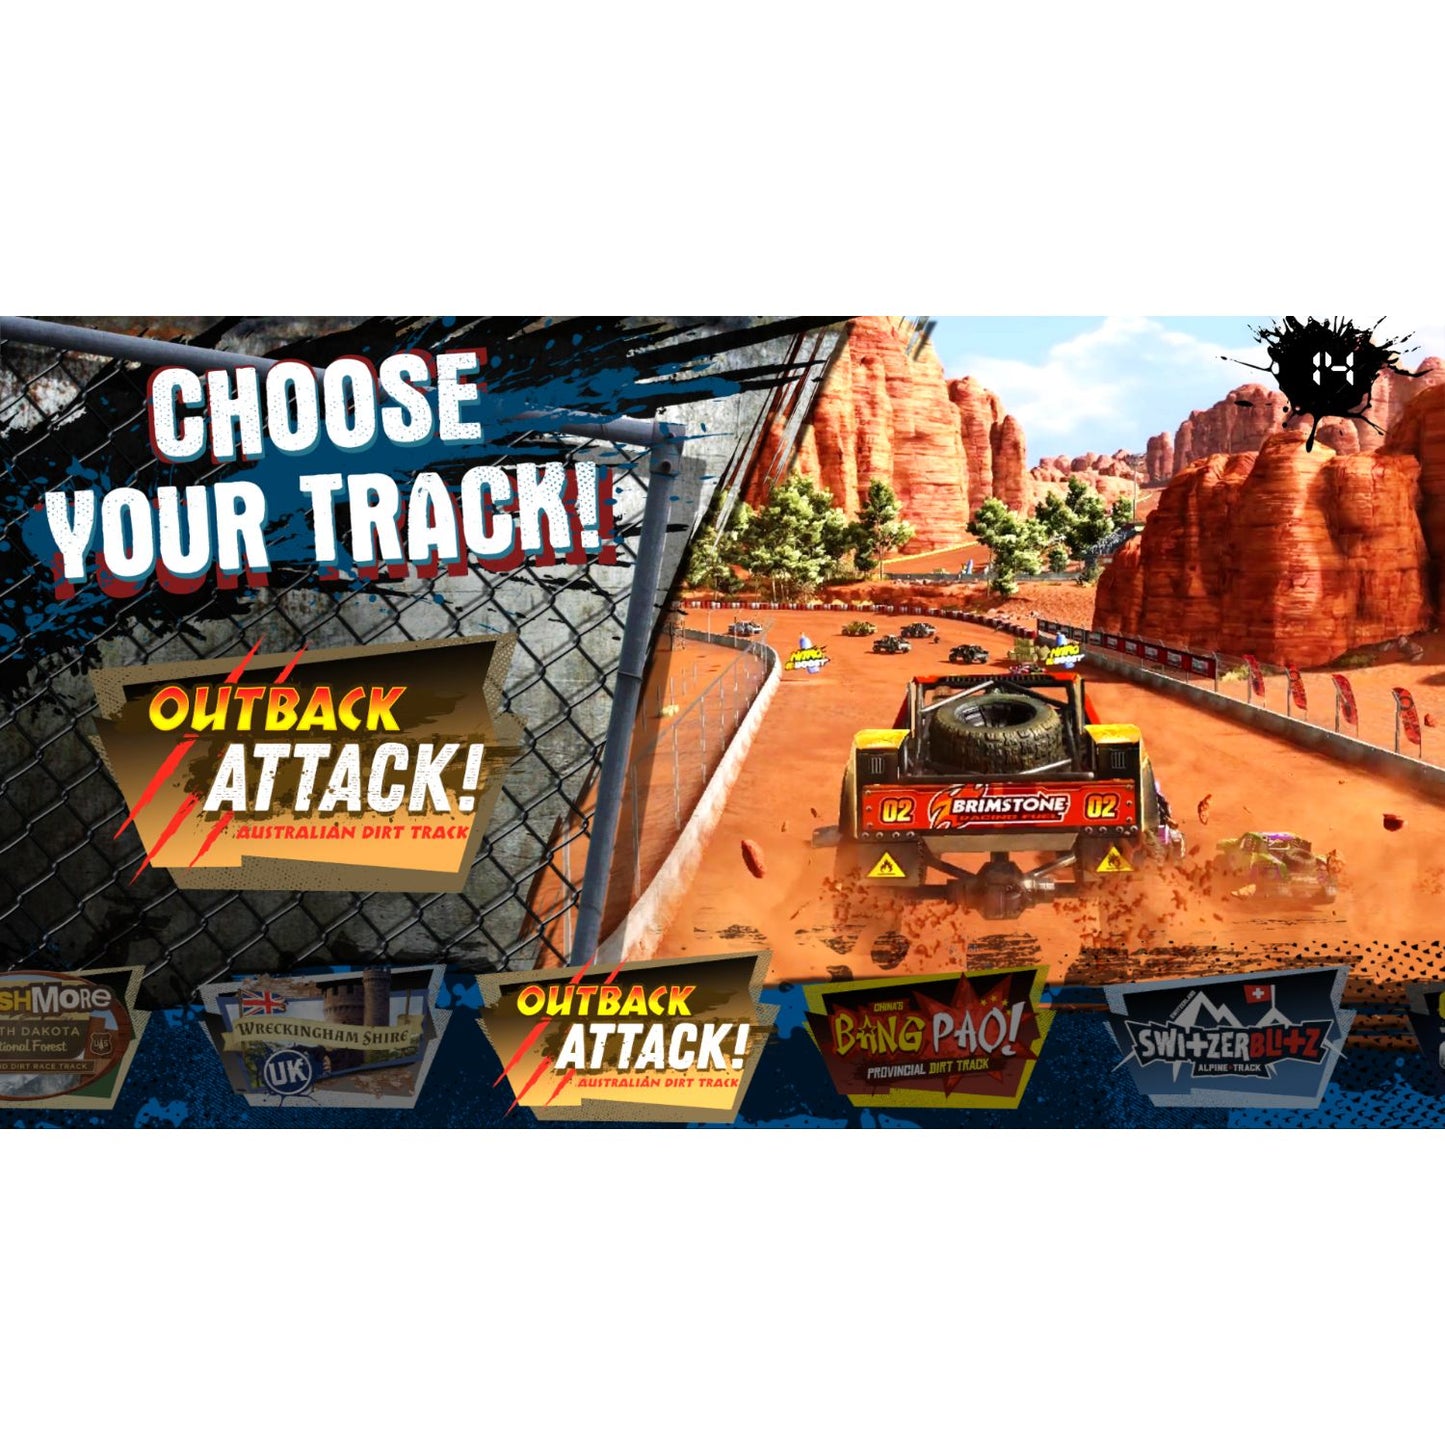 Raw Thrills Nitro Trucks Arcade Game - Gaming Blaze